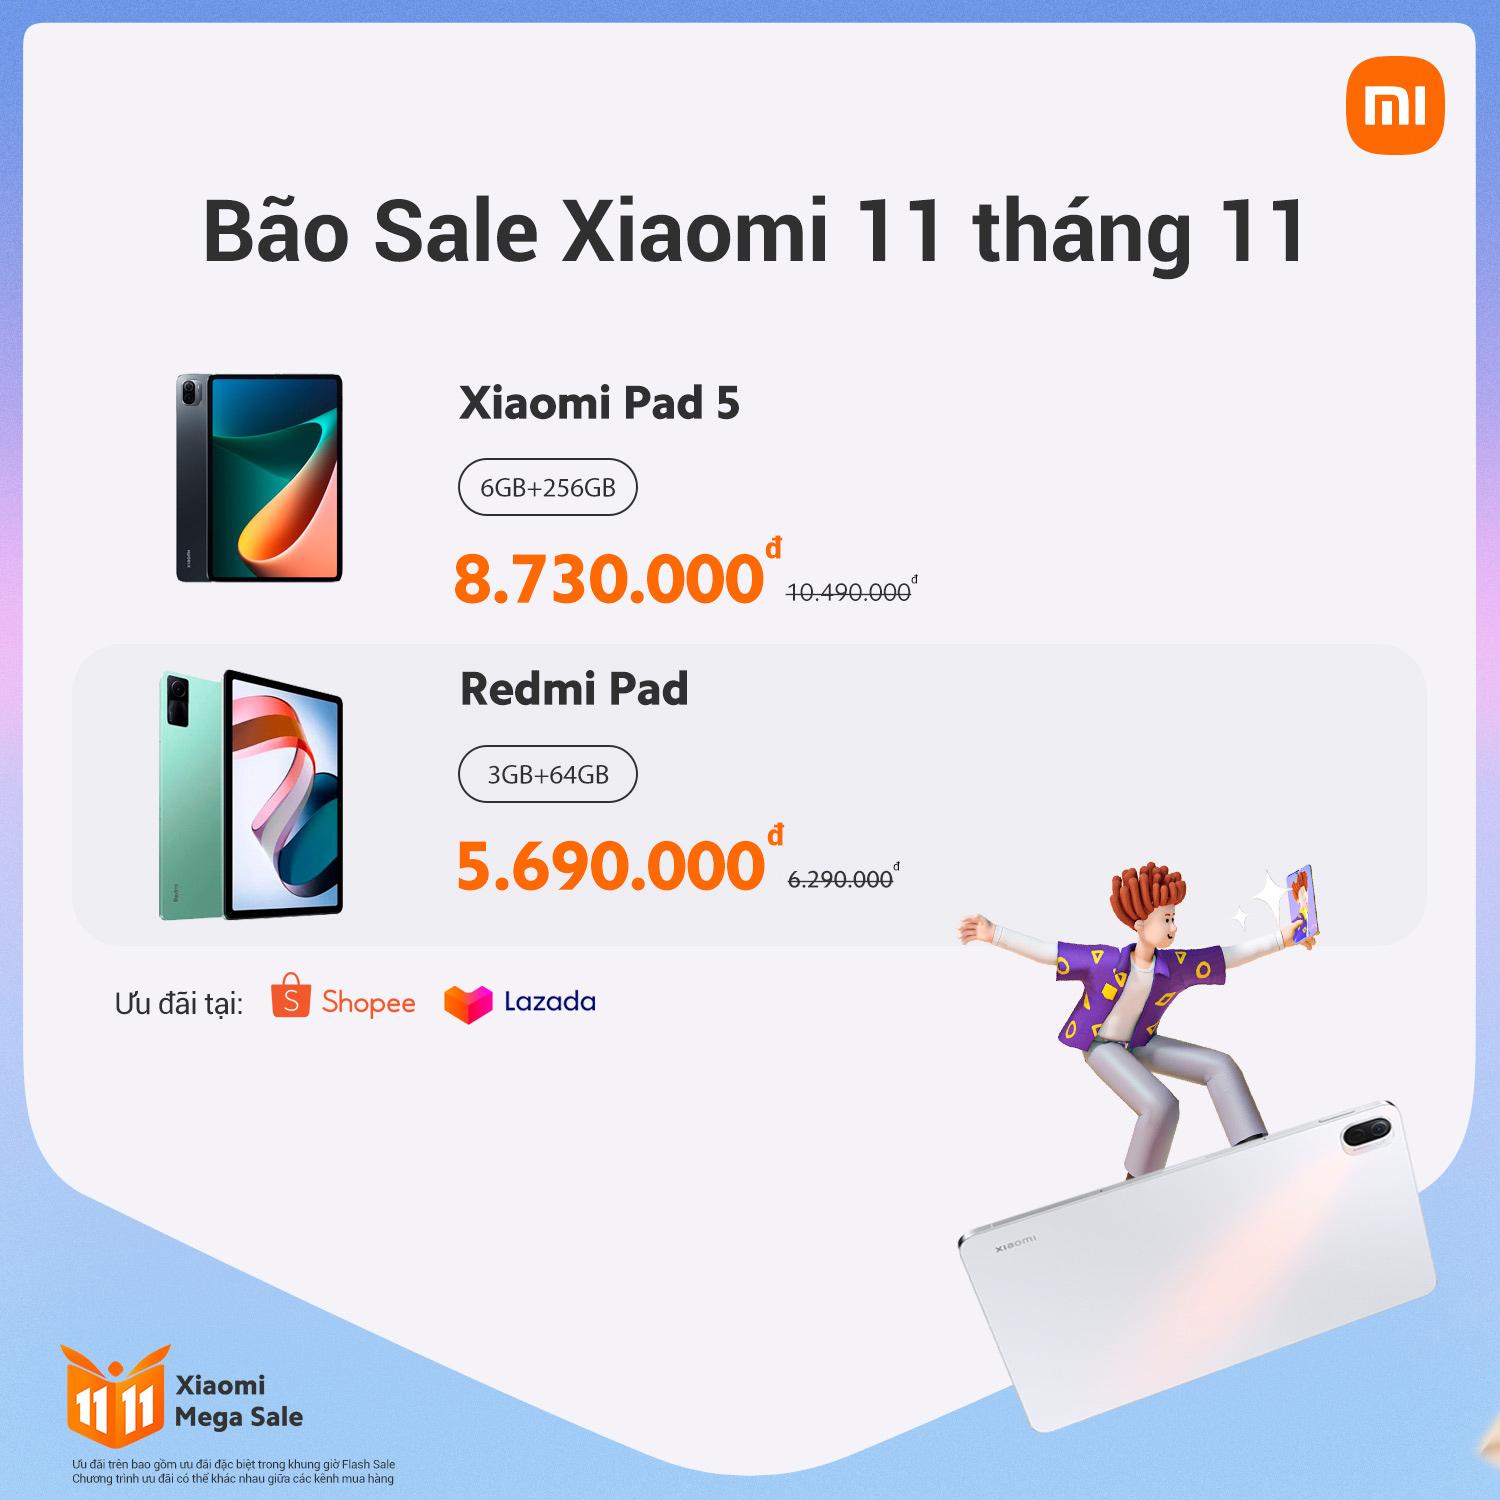 Bão SALE Xiaomi 11 tháng 11 với hàng loạt ưu đãi giảm giá hấp dẫn